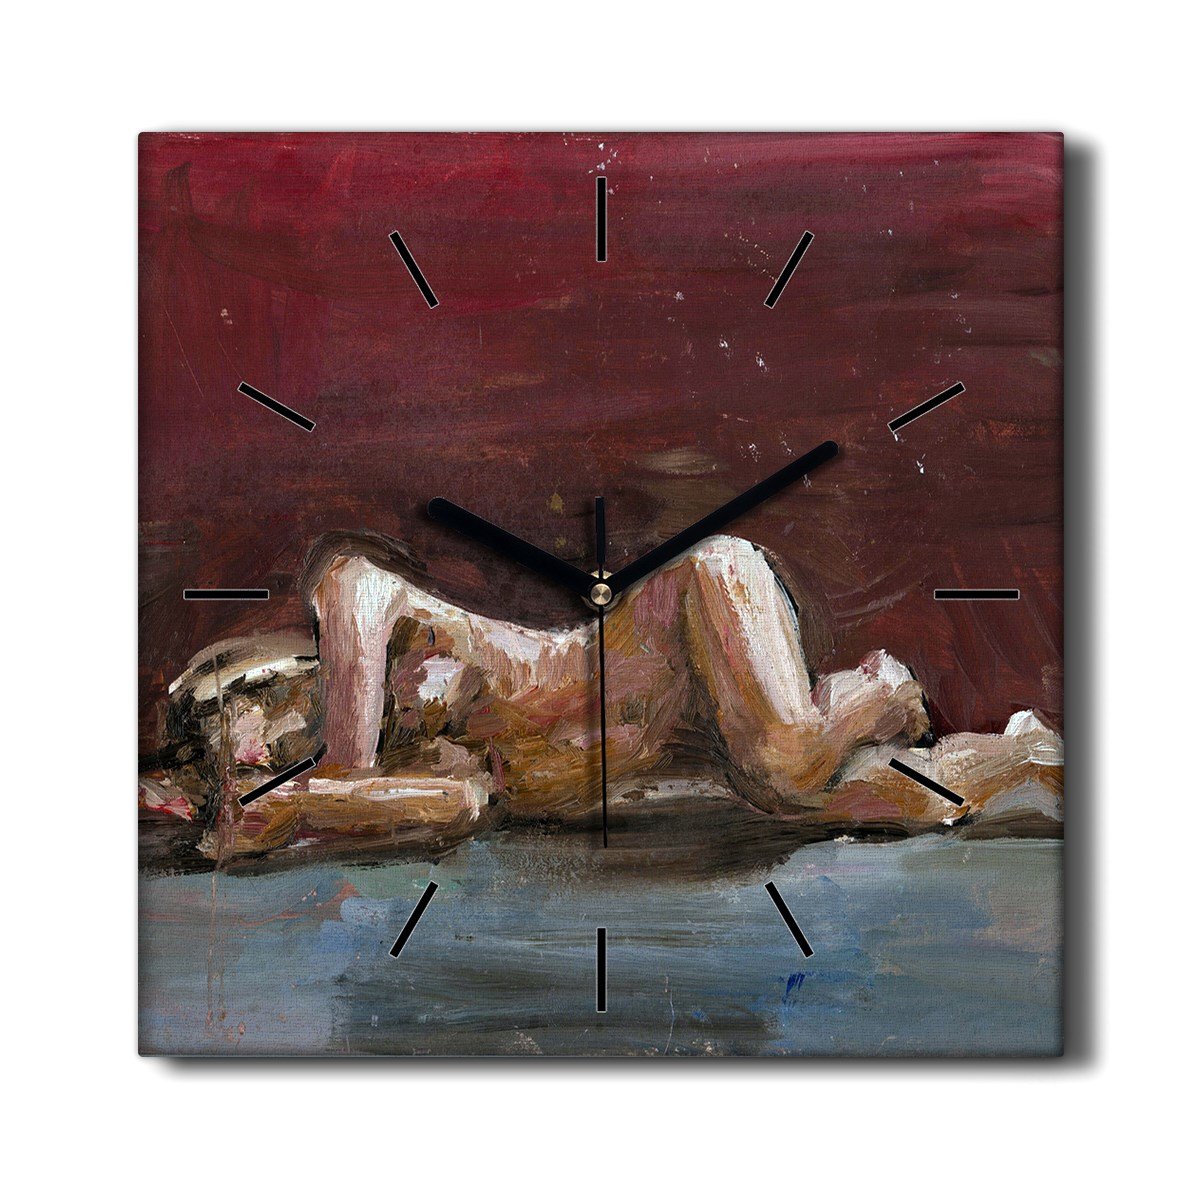 Drewniany zegar na płótnie Kobiety anatomia 30x30, Coloray